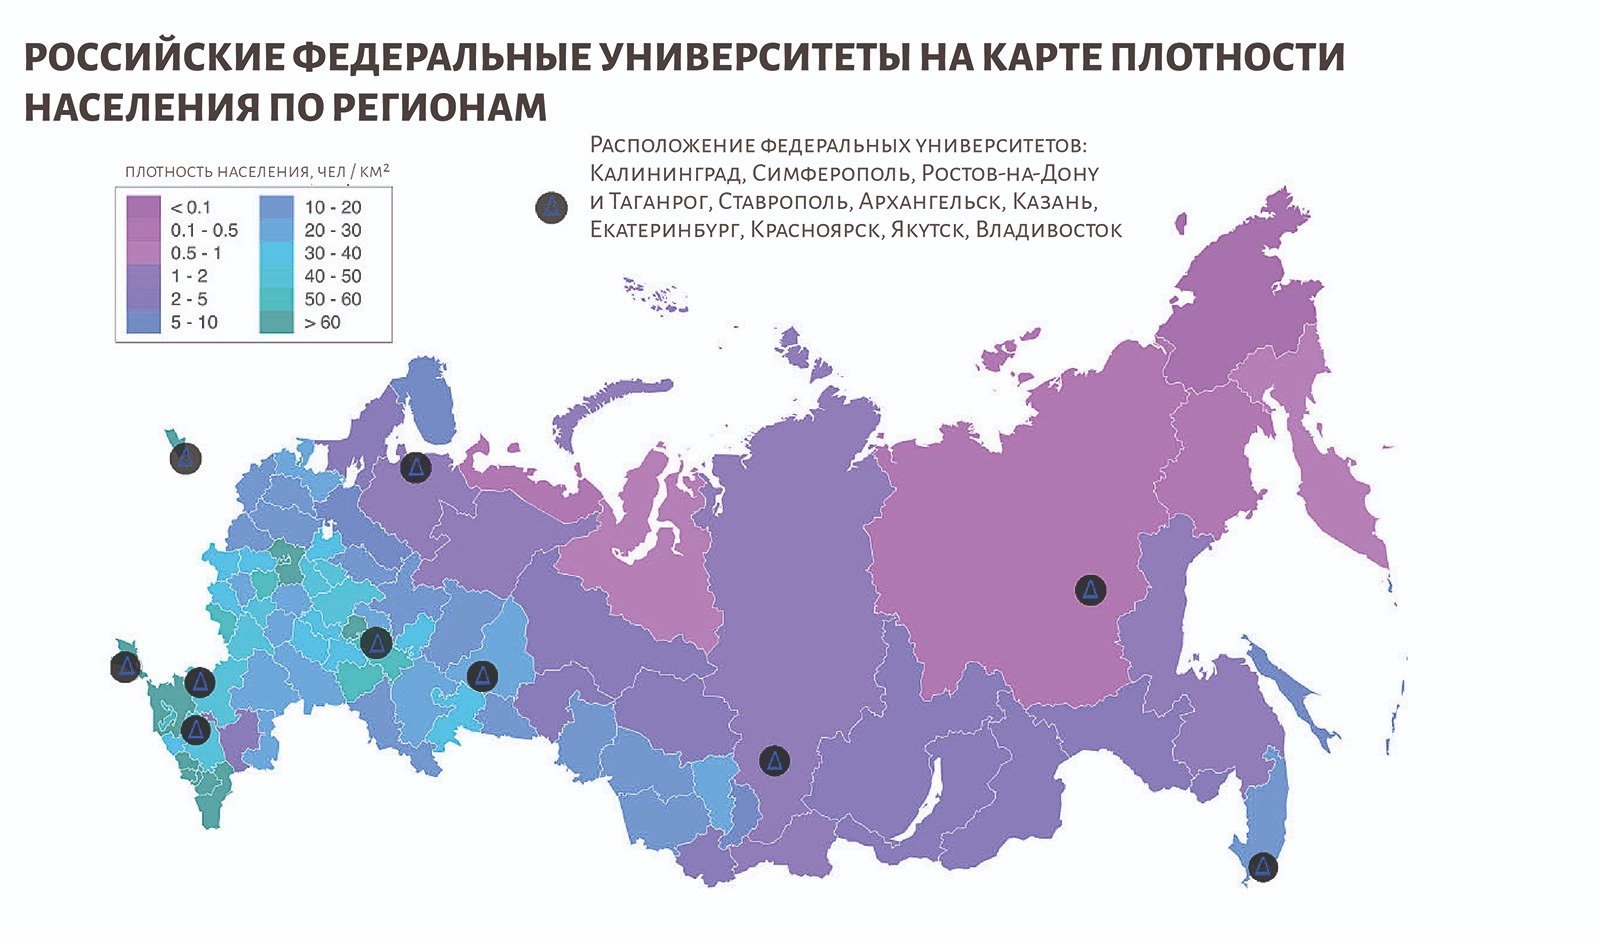 Источник карты РФ: Алексей Глушков, ru.wikipedia